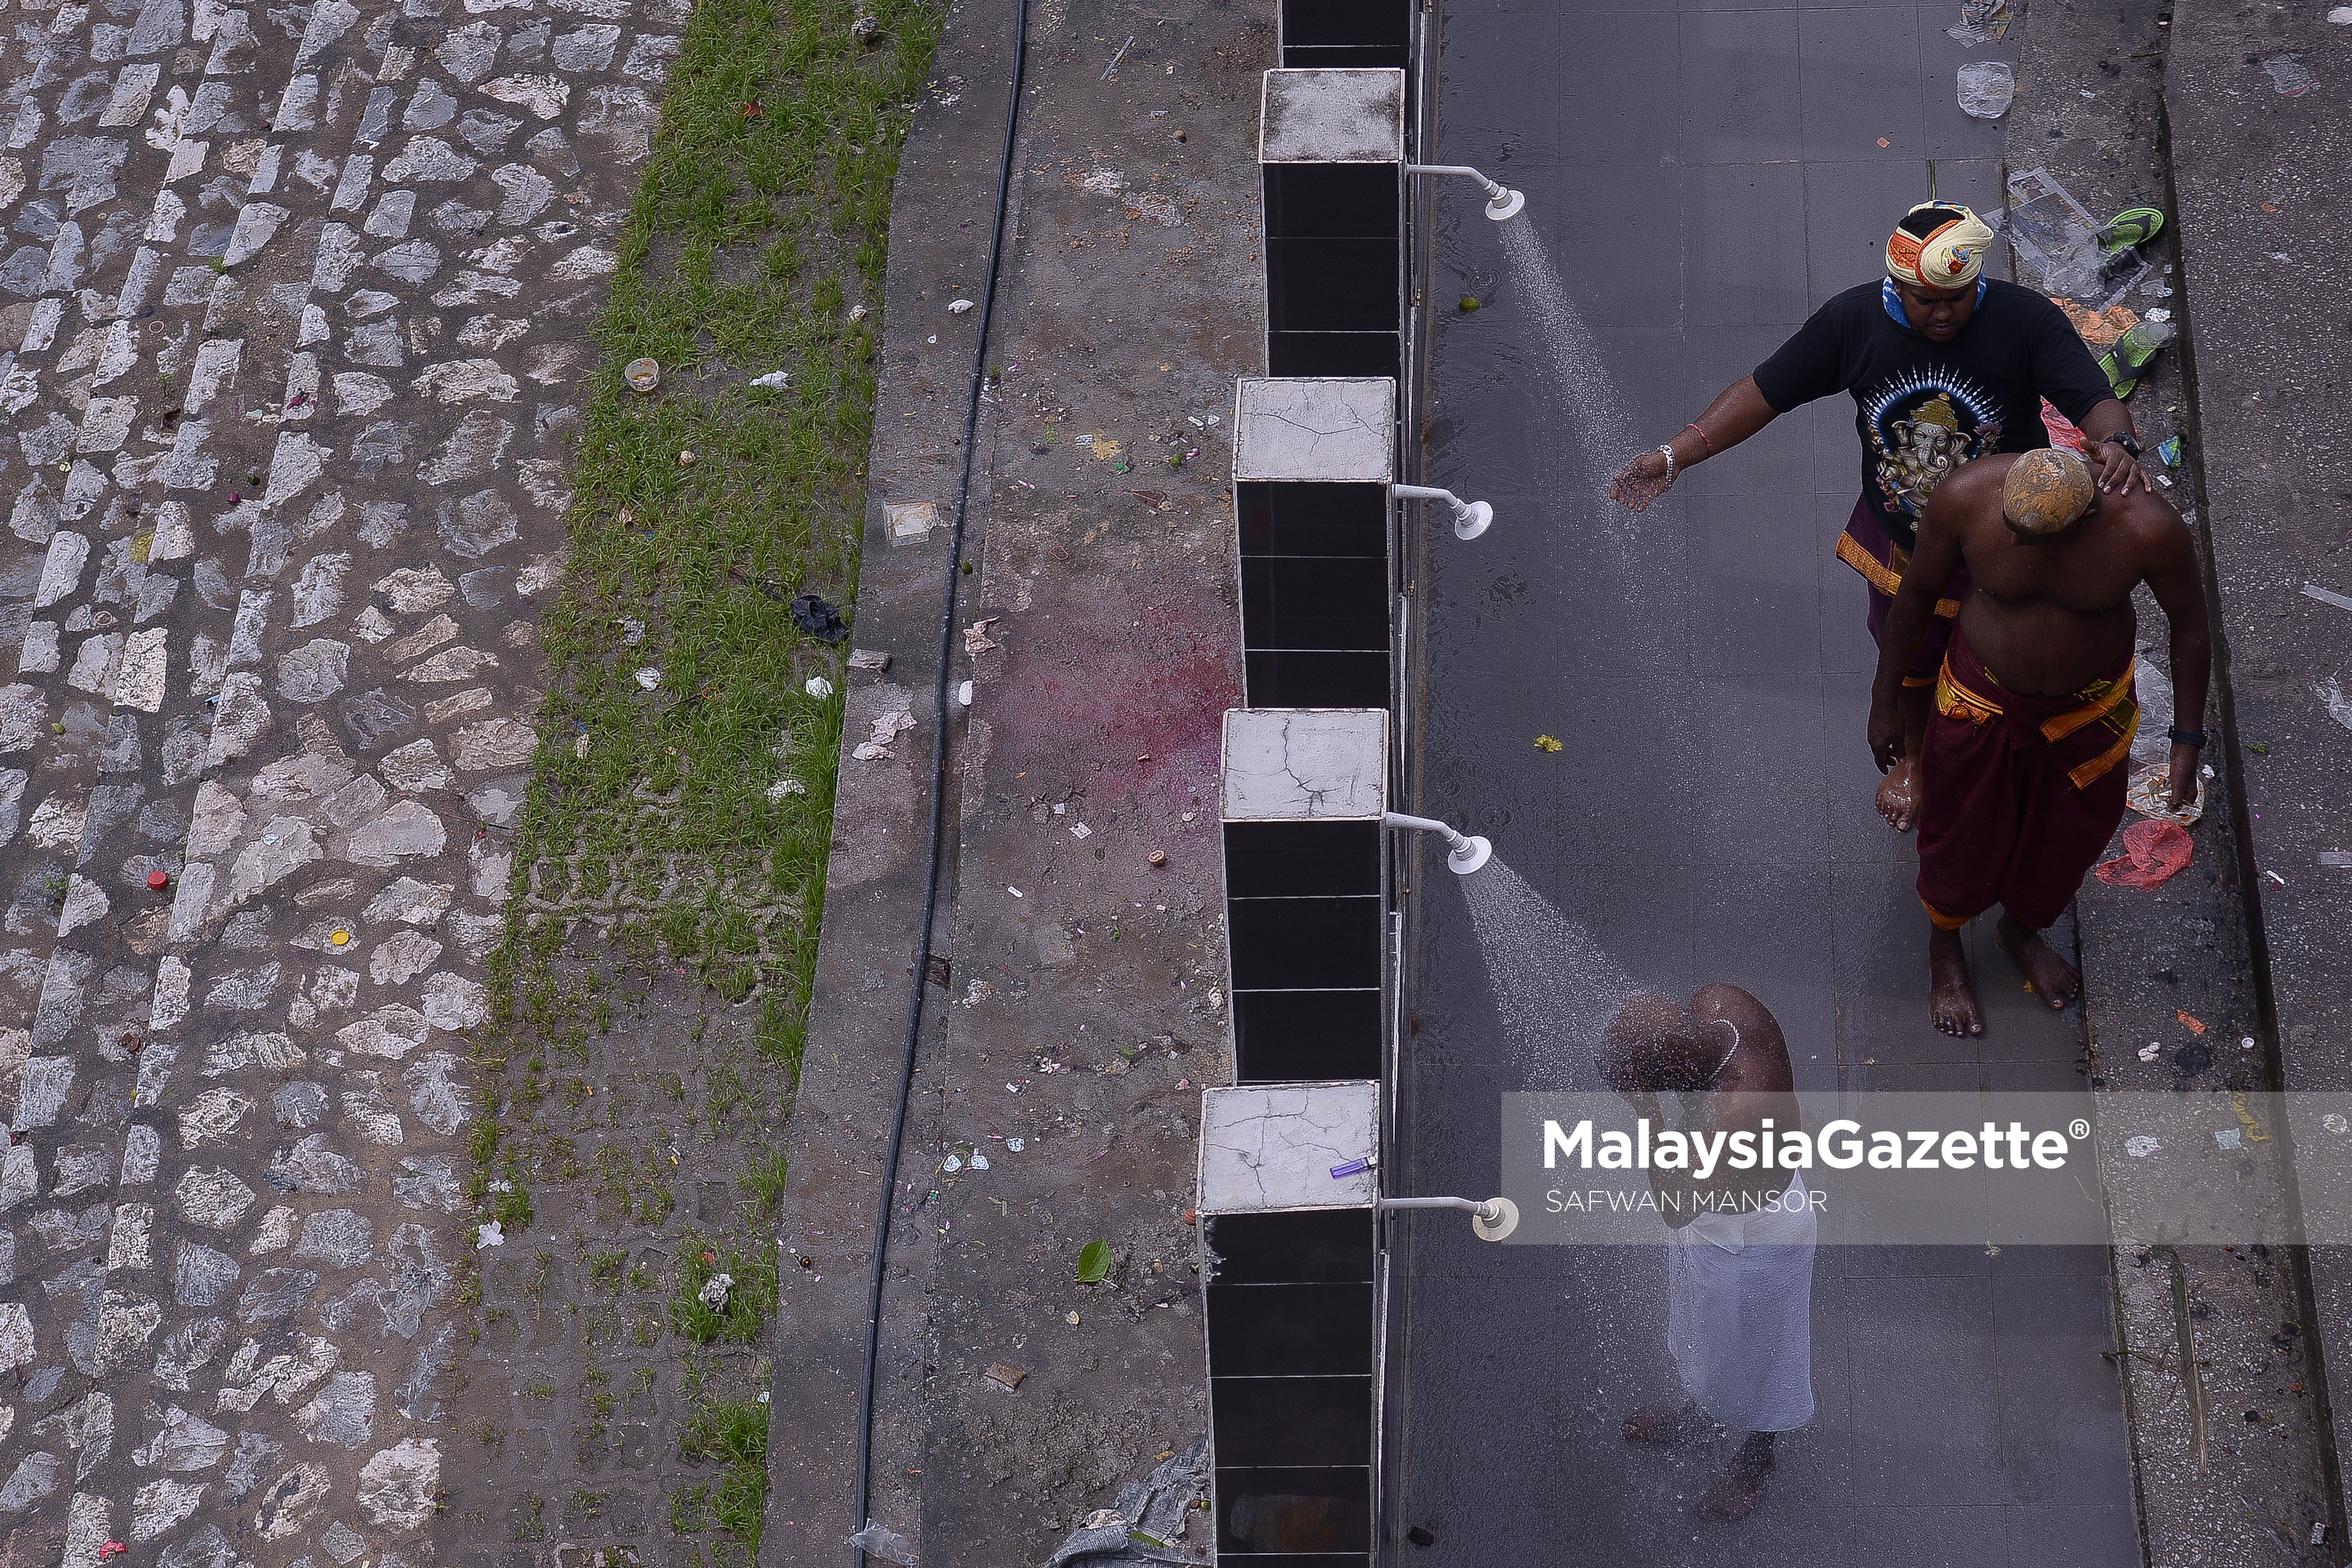 Tiga lelaki penganut agama Hindu menyucikan diri dibawah pancuran air berhampiran Sungai Gombak sempena sambutan Thaipusam ketika tinjauan lensa Malaysia Gazette di Btu Caves, Selangor. foto SAFWAN MANSOR, 08 FEBRUARI 2017